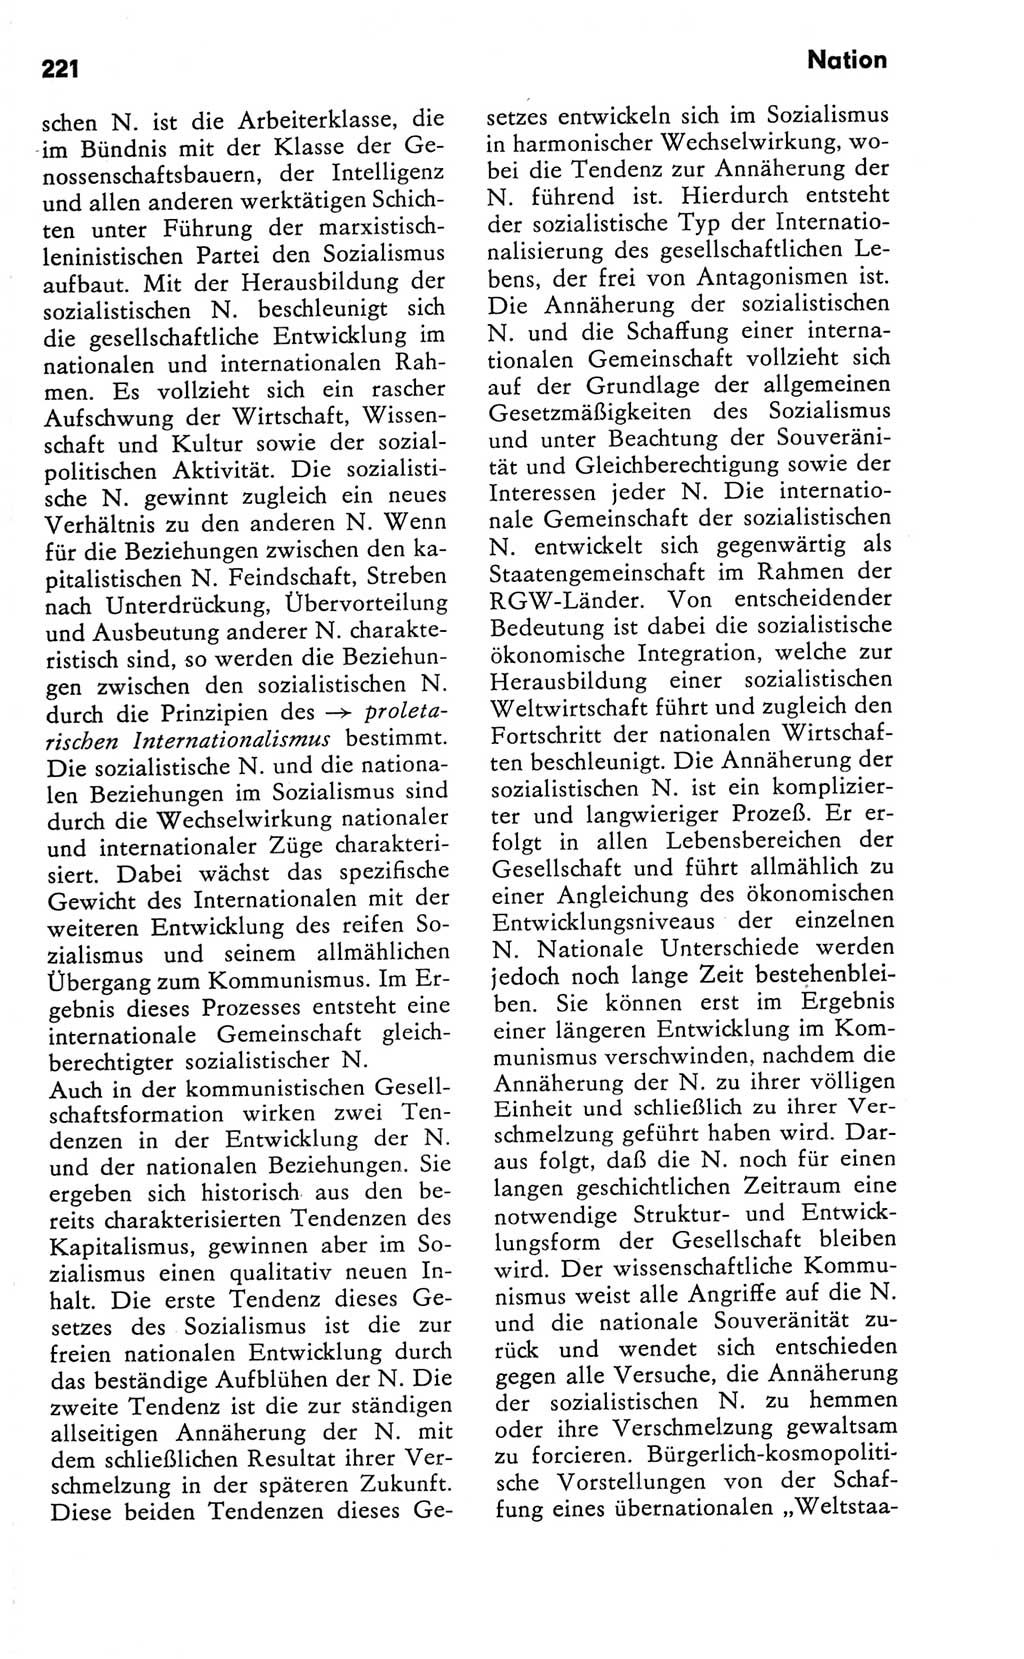 Kleines Wörterbuch der marxistisch-leninistischen Philosophie [Deutsche Demokratische Republik (DDR)] 1981, Seite 221 (Kl. Wb. ML Phil. DDR 1981, S. 221)